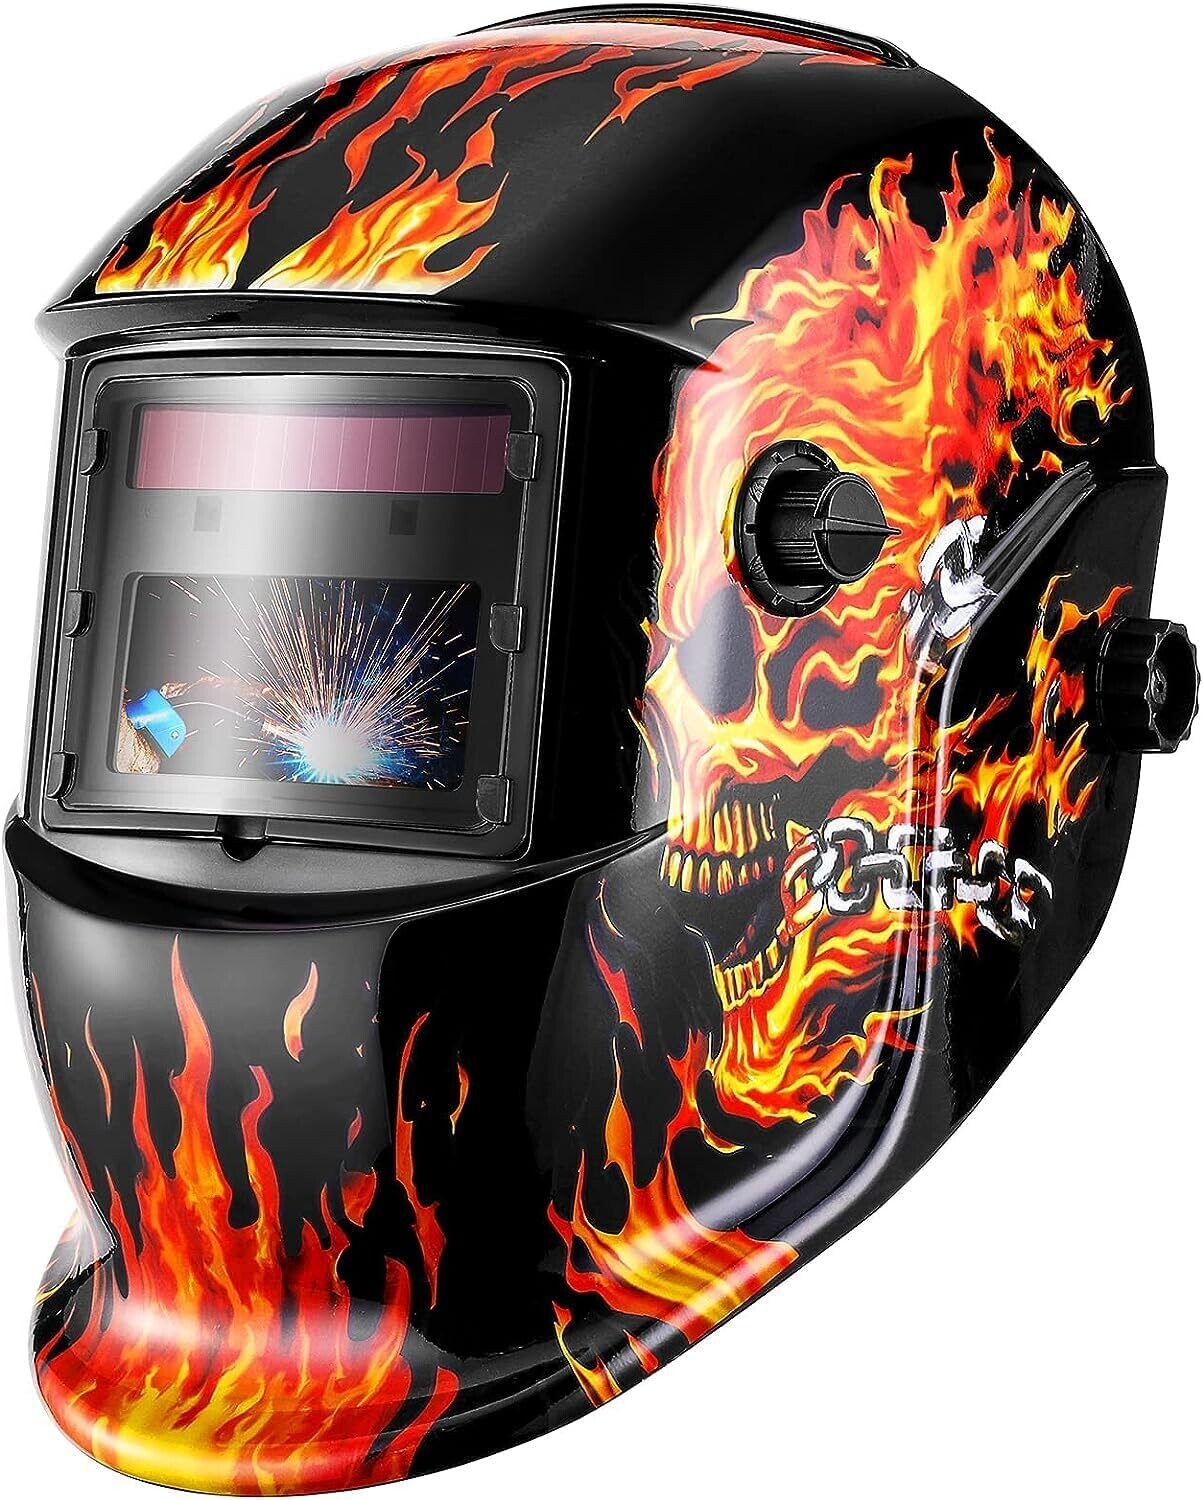 Welding Auto Darkening Helmet, True Color Solar, Welding Mask Auto Darkening, Welders Mask,